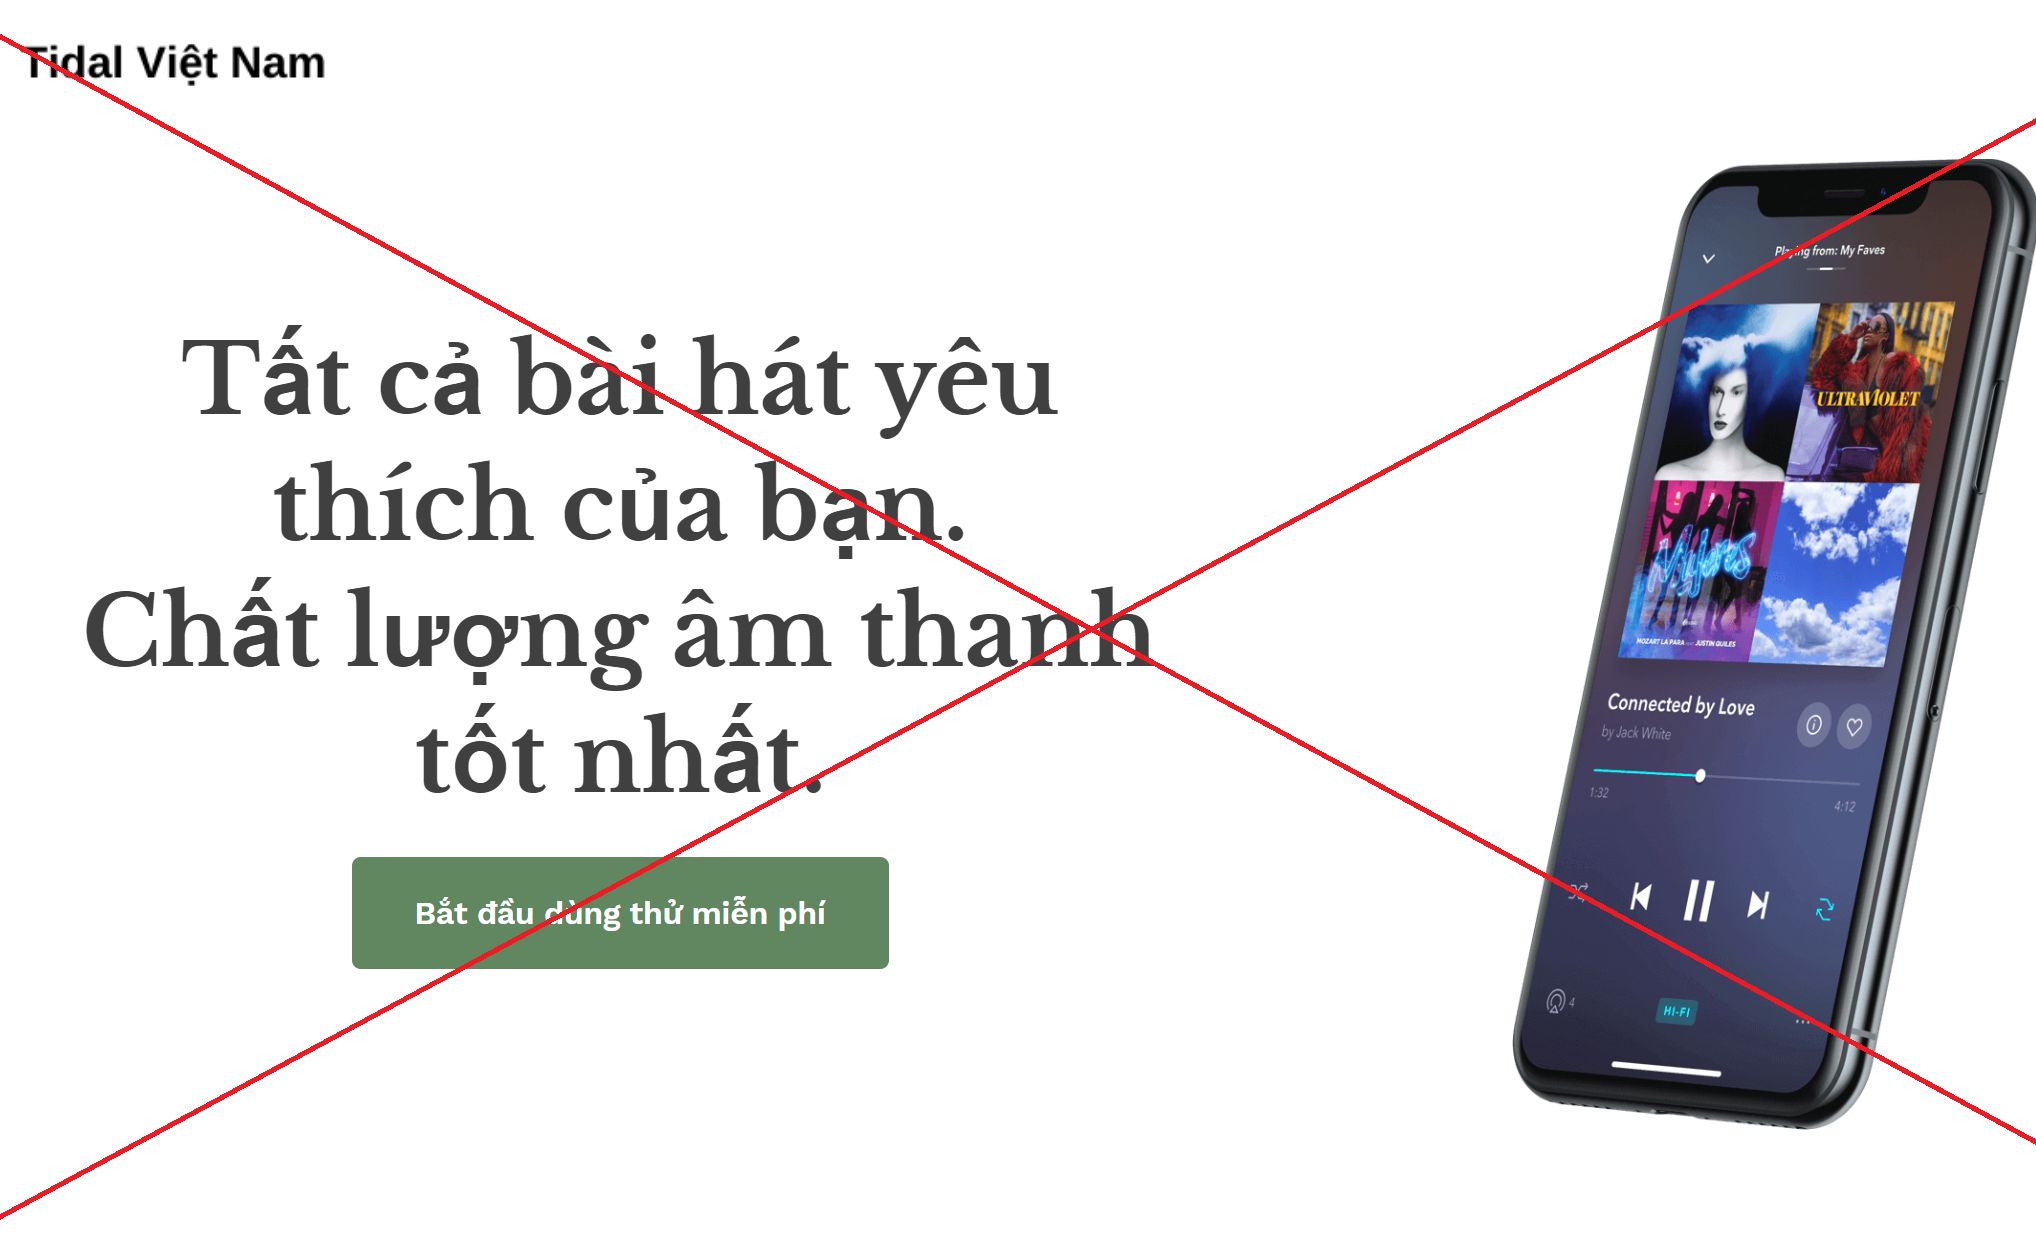 Cảnh báo - website giả mạo dịch vụ stream nhạc Tidal tại Việt Nam